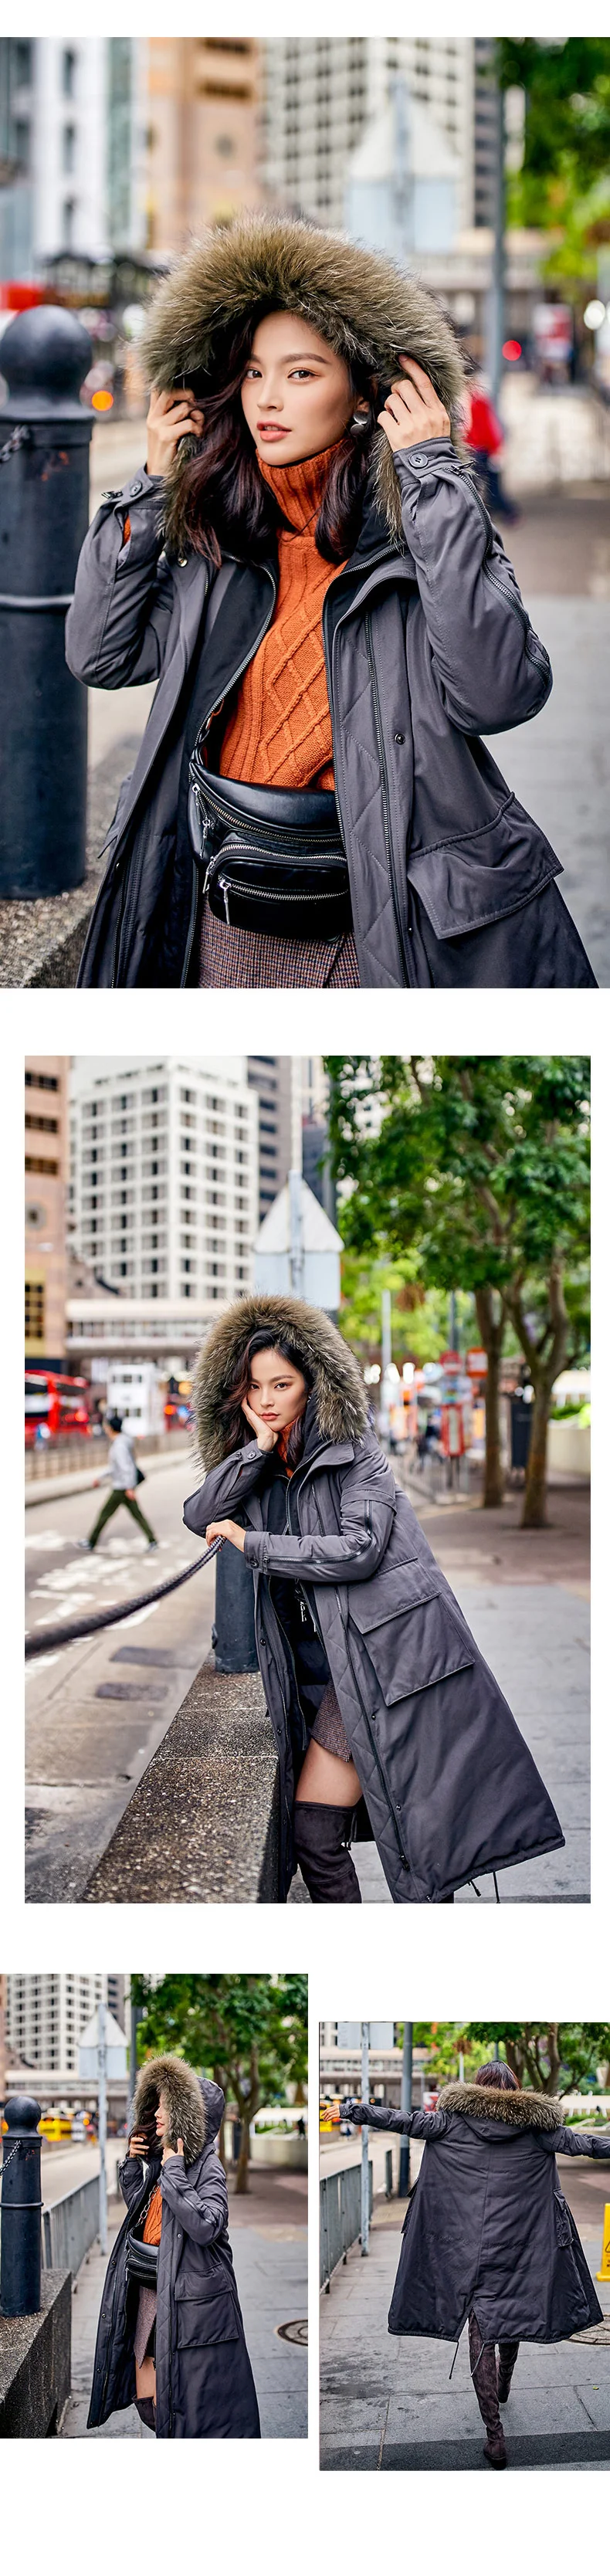 ARTKA Новая городская серия, Женское зимнее пальто с воротником из меха енота средней длины Parker, военная форма, пуховик, куртка JY17033